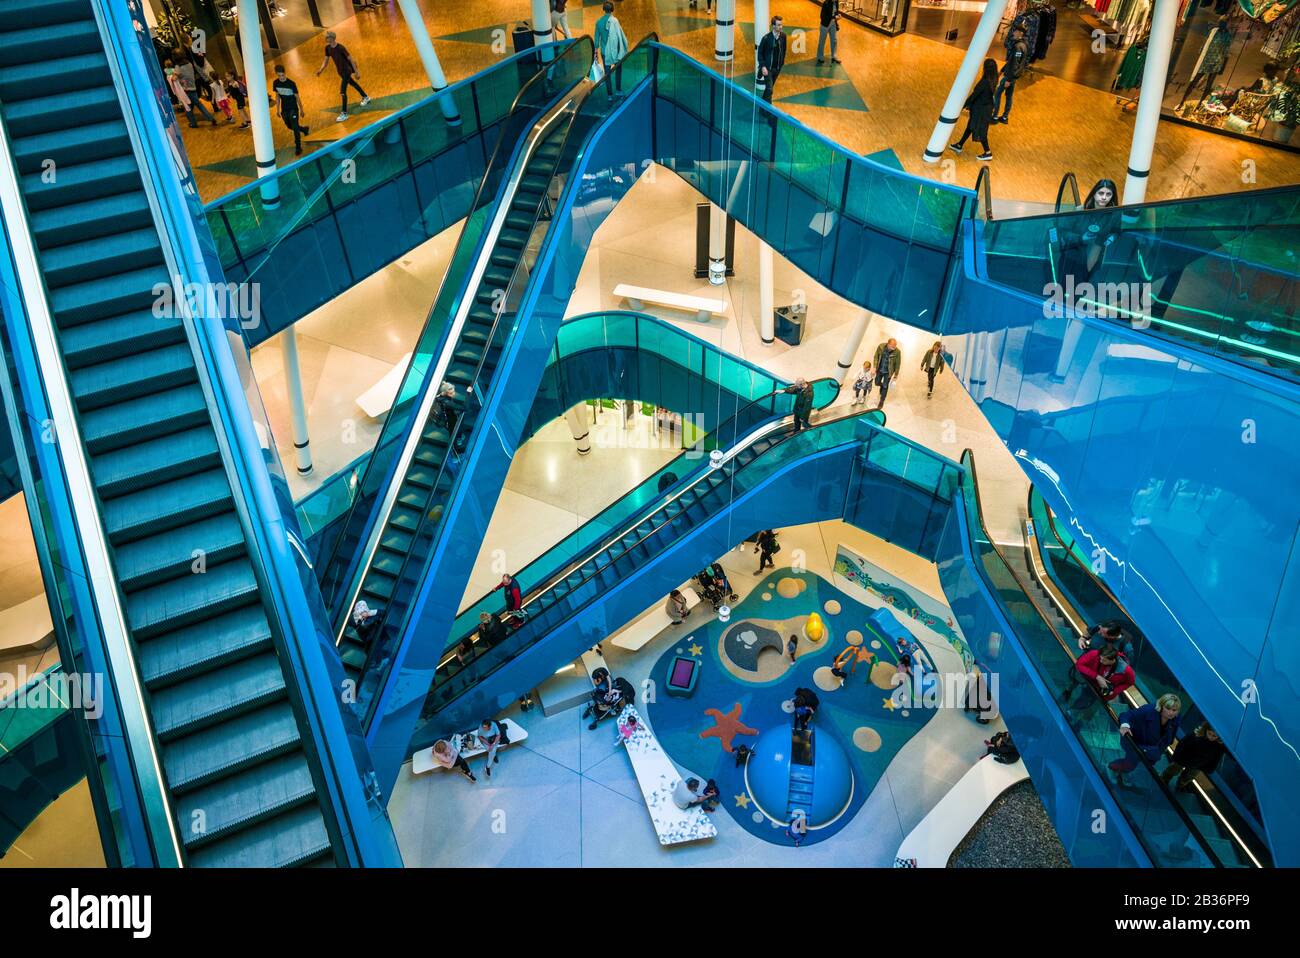 SUECIA, Scania, Malmo, Emporia Shopping Mall, interior Fotografía de stock  - Alamy